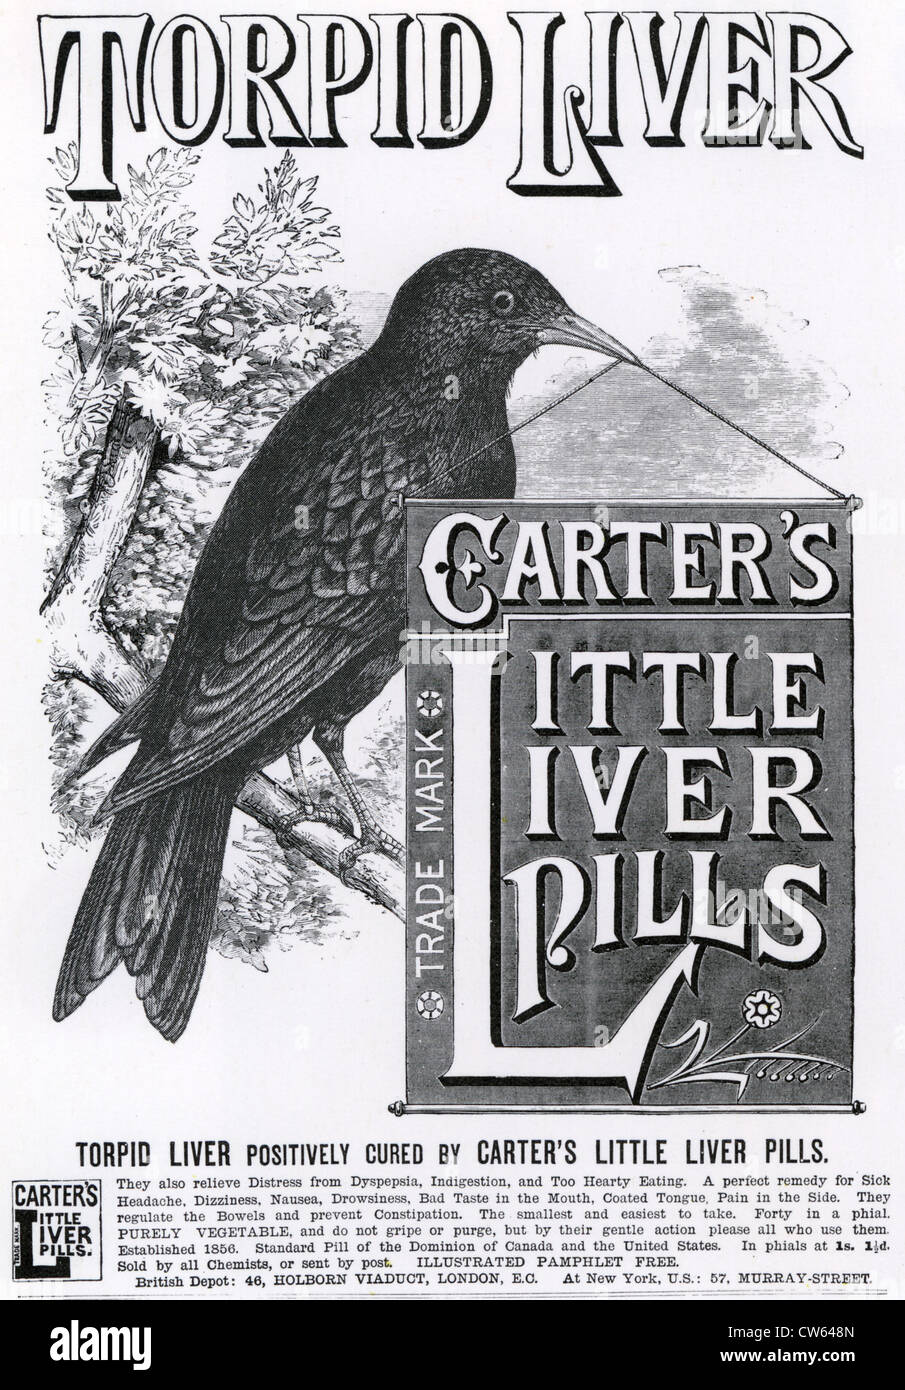 carters-little-liver-pills-advert-1890-CW648N.jpg